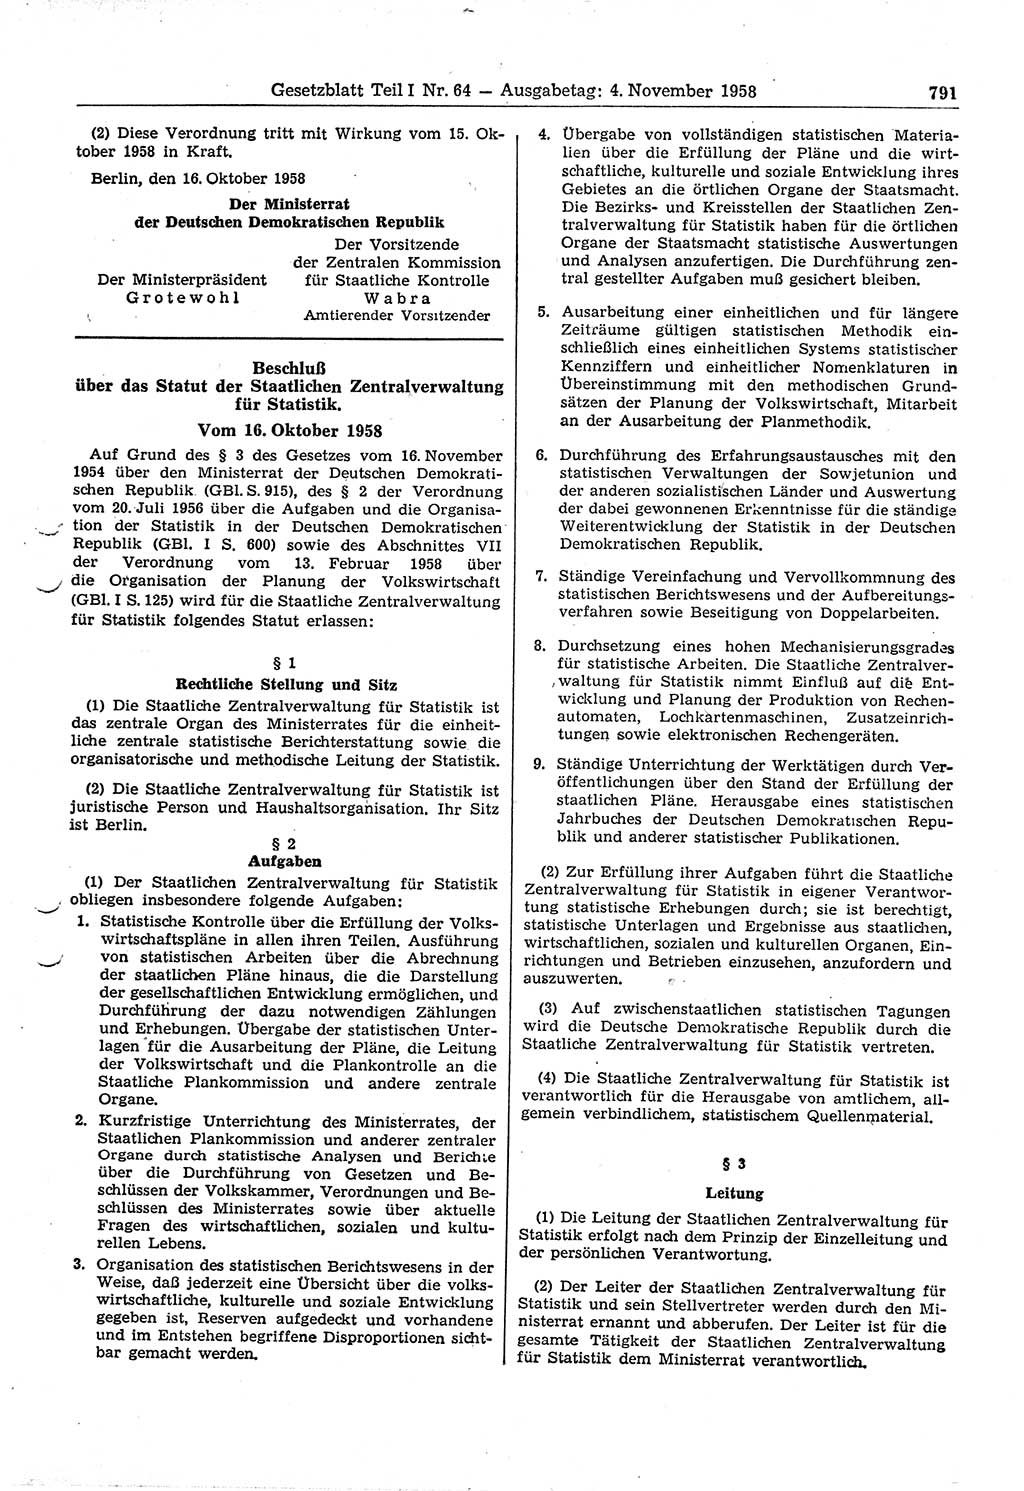 Gesetzblatt (GBl.) der Deutschen Demokratischen Republik (DDR) Teil Ⅰ 1958, Seite 791 (GBl. DDR Ⅰ 1958, S. 791)